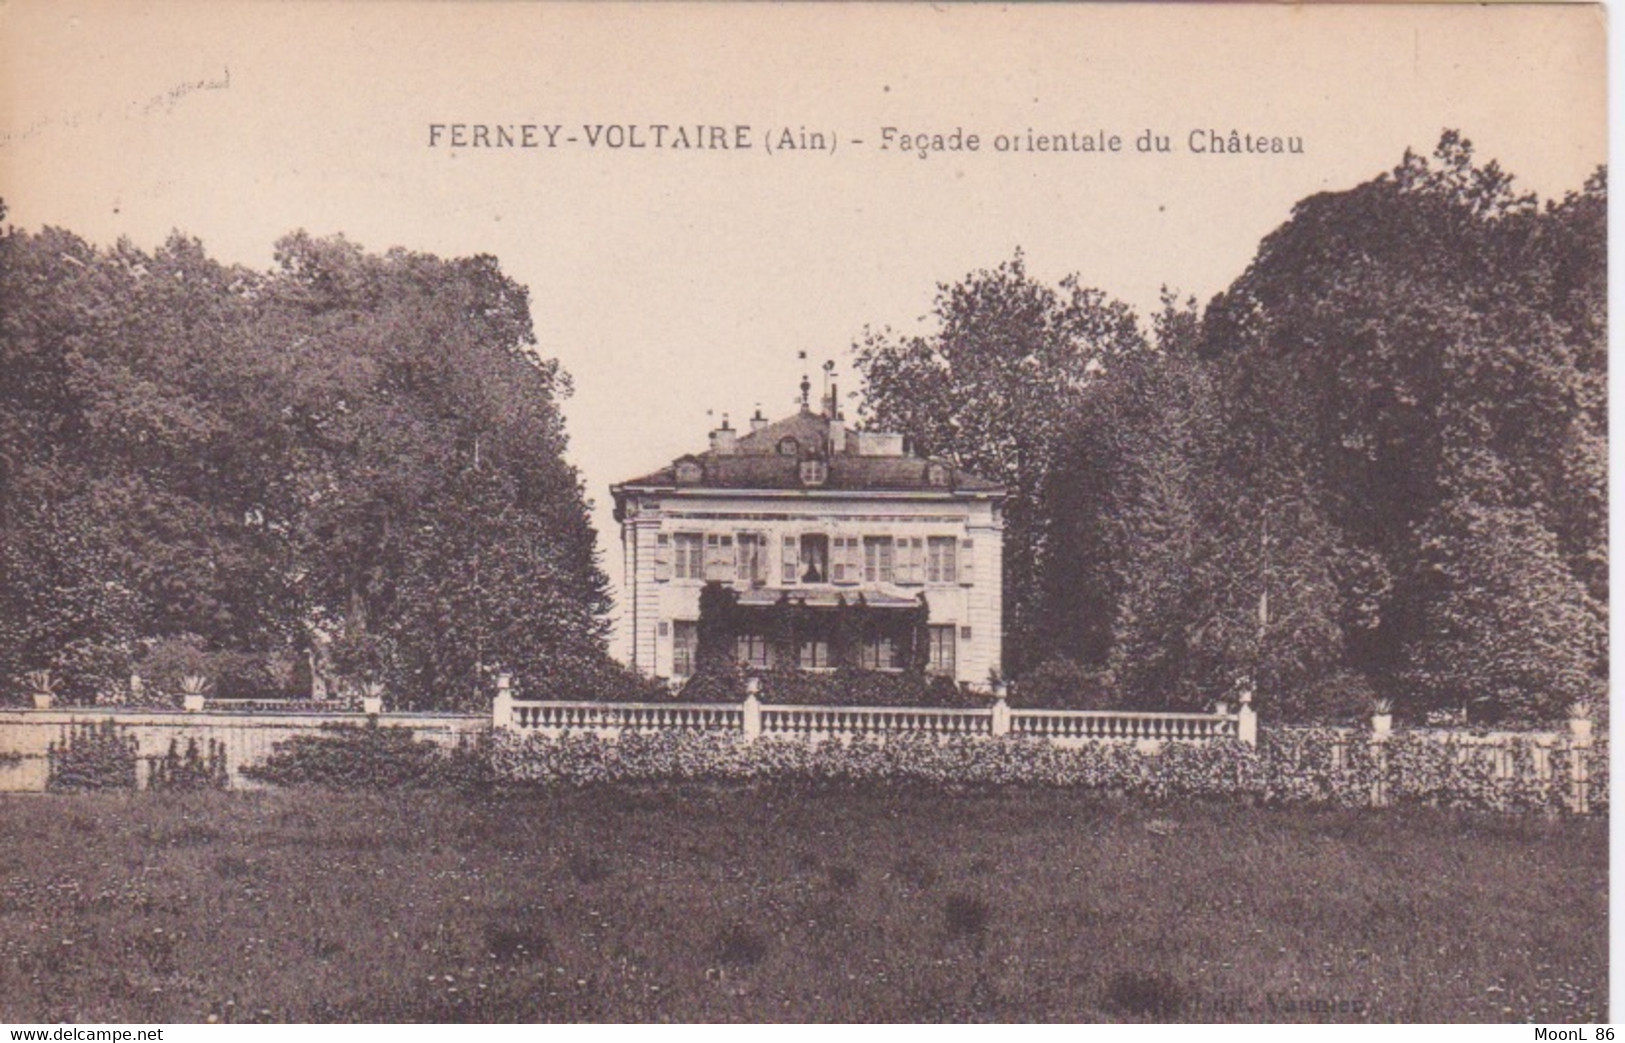 01 - AIN - FERNEY-VOLTAIRE - CHATEAU FACE ORIENTALE - Ferney-Voltaire